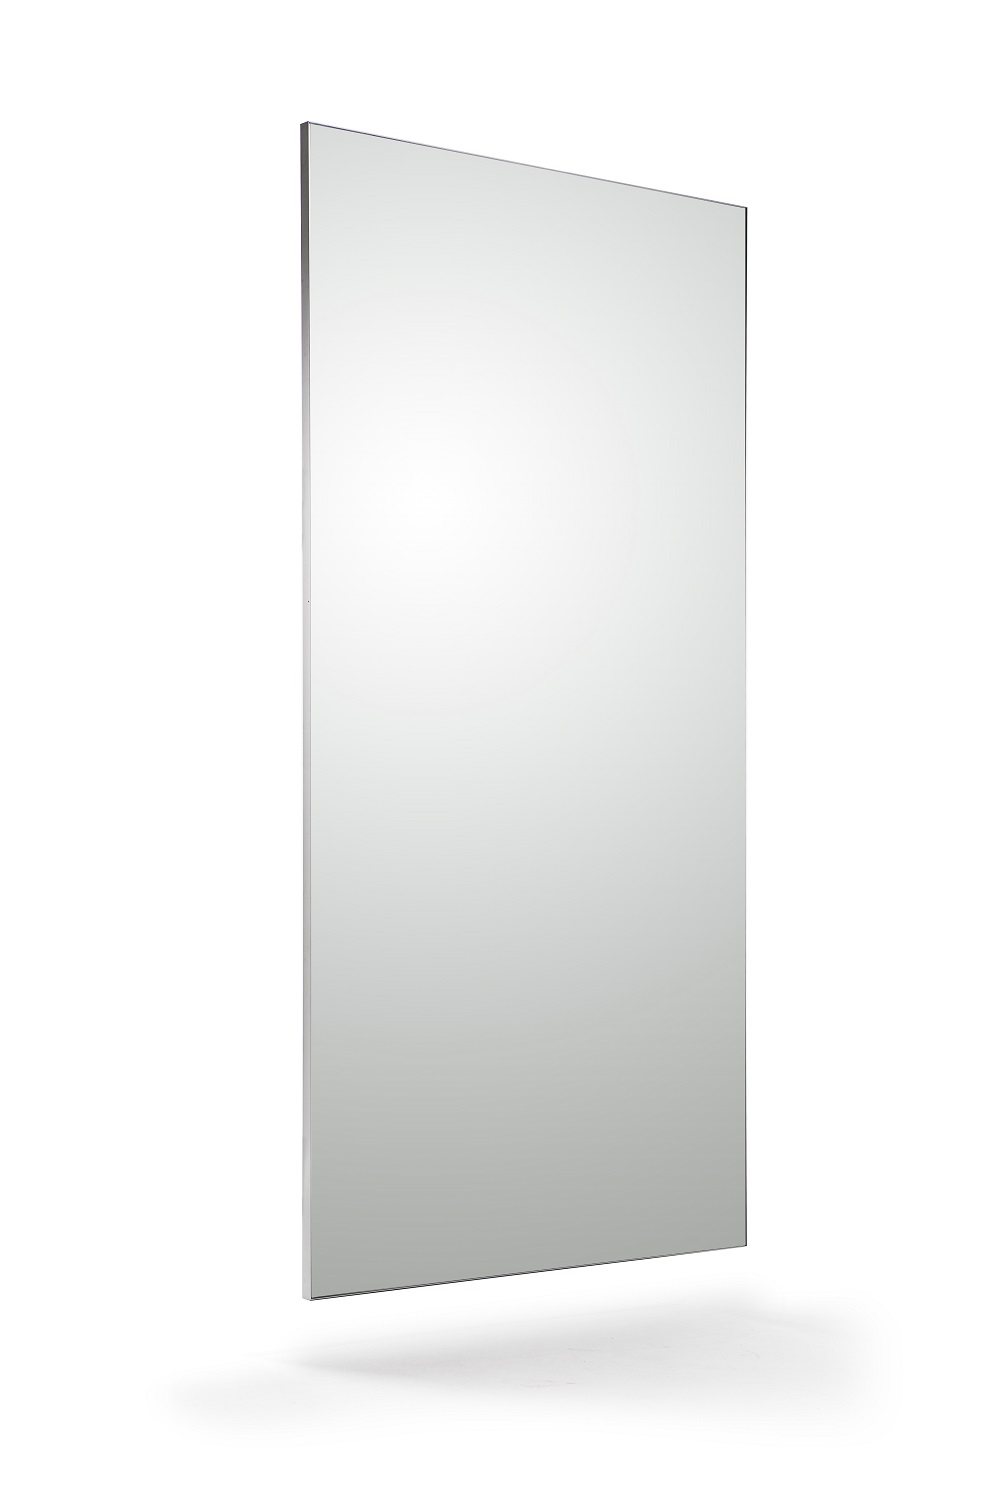 Grande porte de combinaison élevée mobile de danse de miroir de plancher de miroir de pleine longueur avec le petit Portable 43 x 155 cm de miroir de bloc Miroirs en pied 0610 Color : BlaCk 